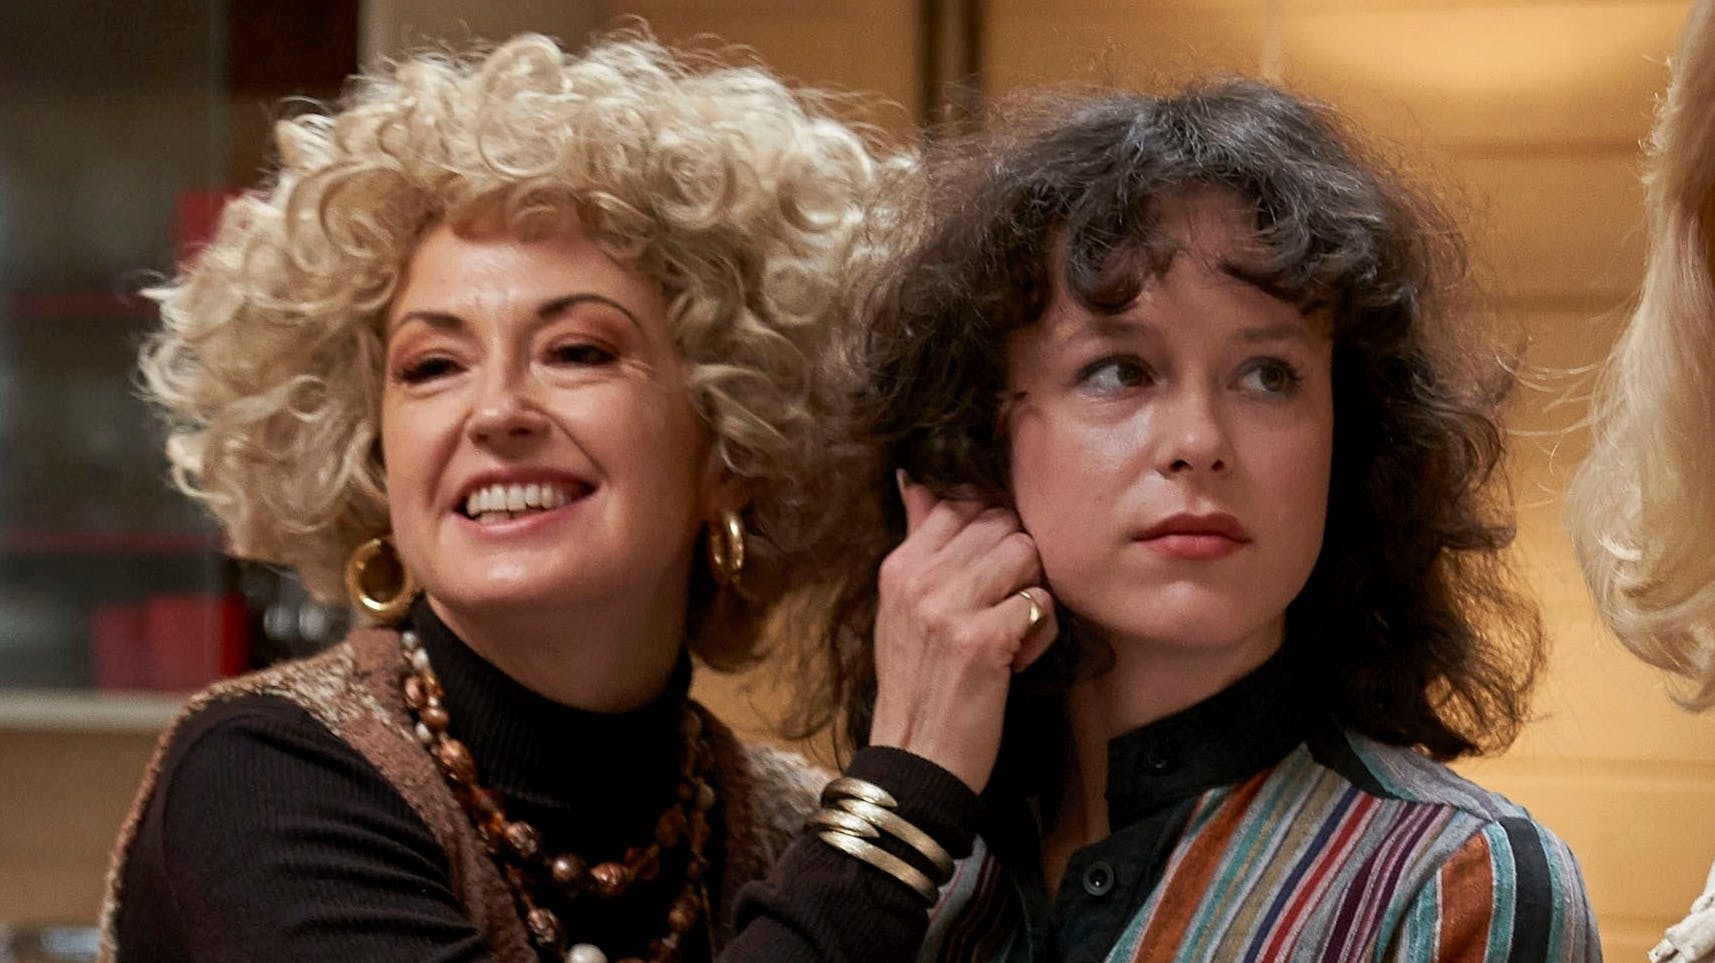 Louise Mieritz og Nanna Finding Koppel i rollerne som Tutter og Diana i "Dansegarderoben".
